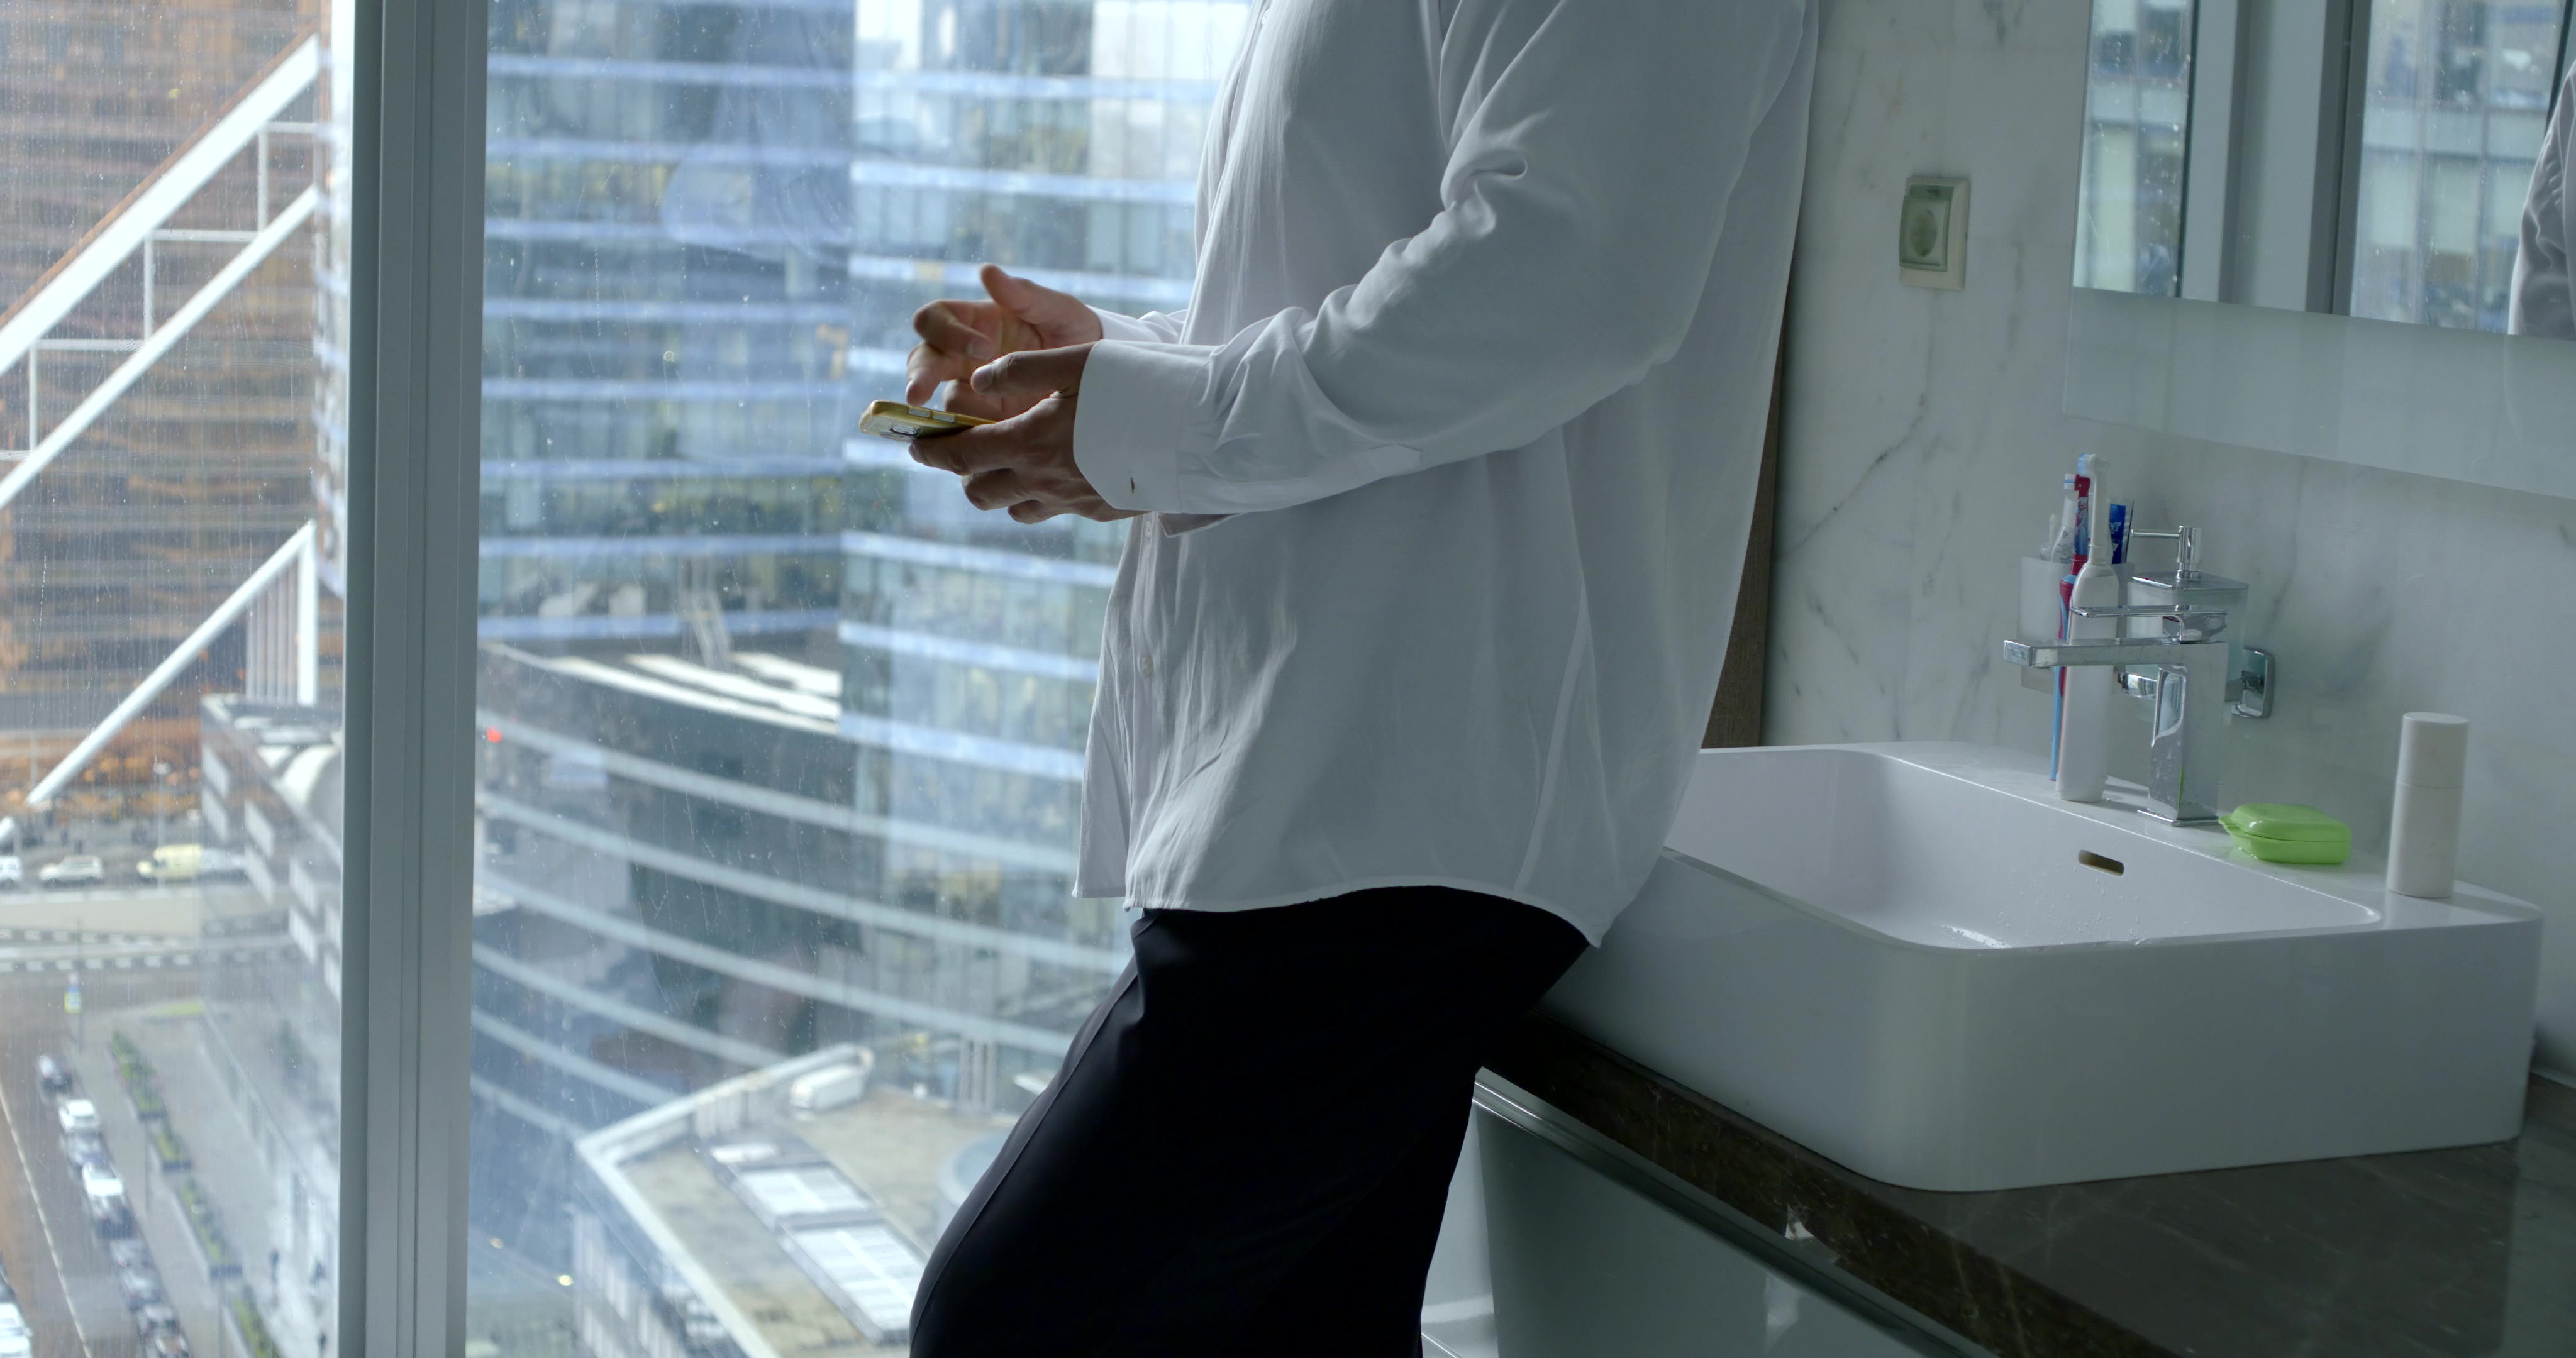 Hombre con smartphone en el retrete. | Fuente: Shutterstock